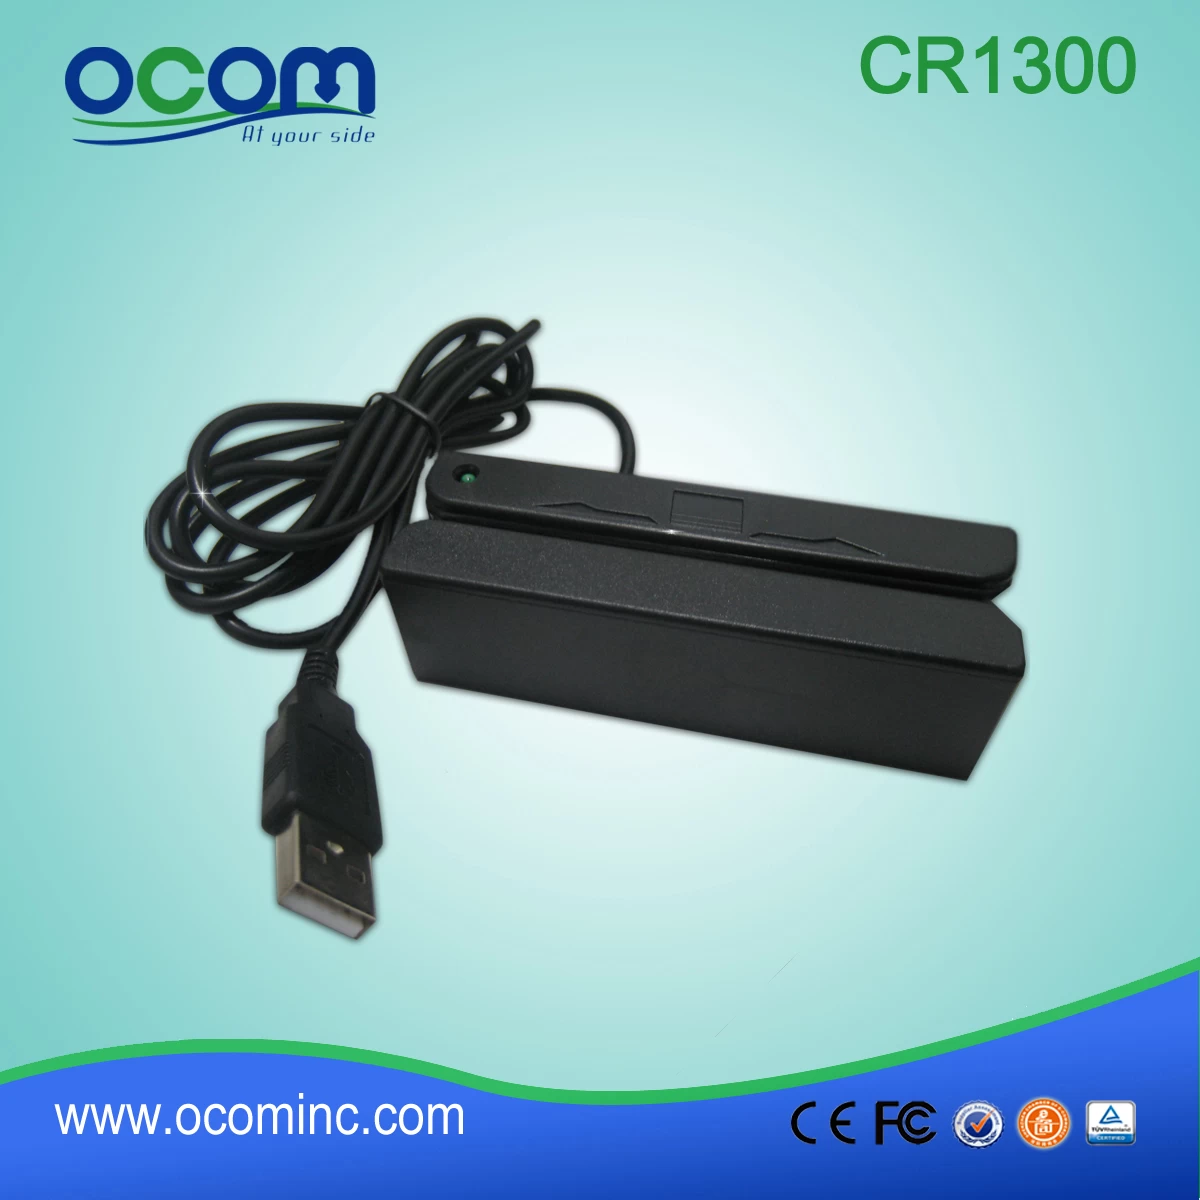 CR1300 Handheld USB MSR Magnetic Card Reader For POS